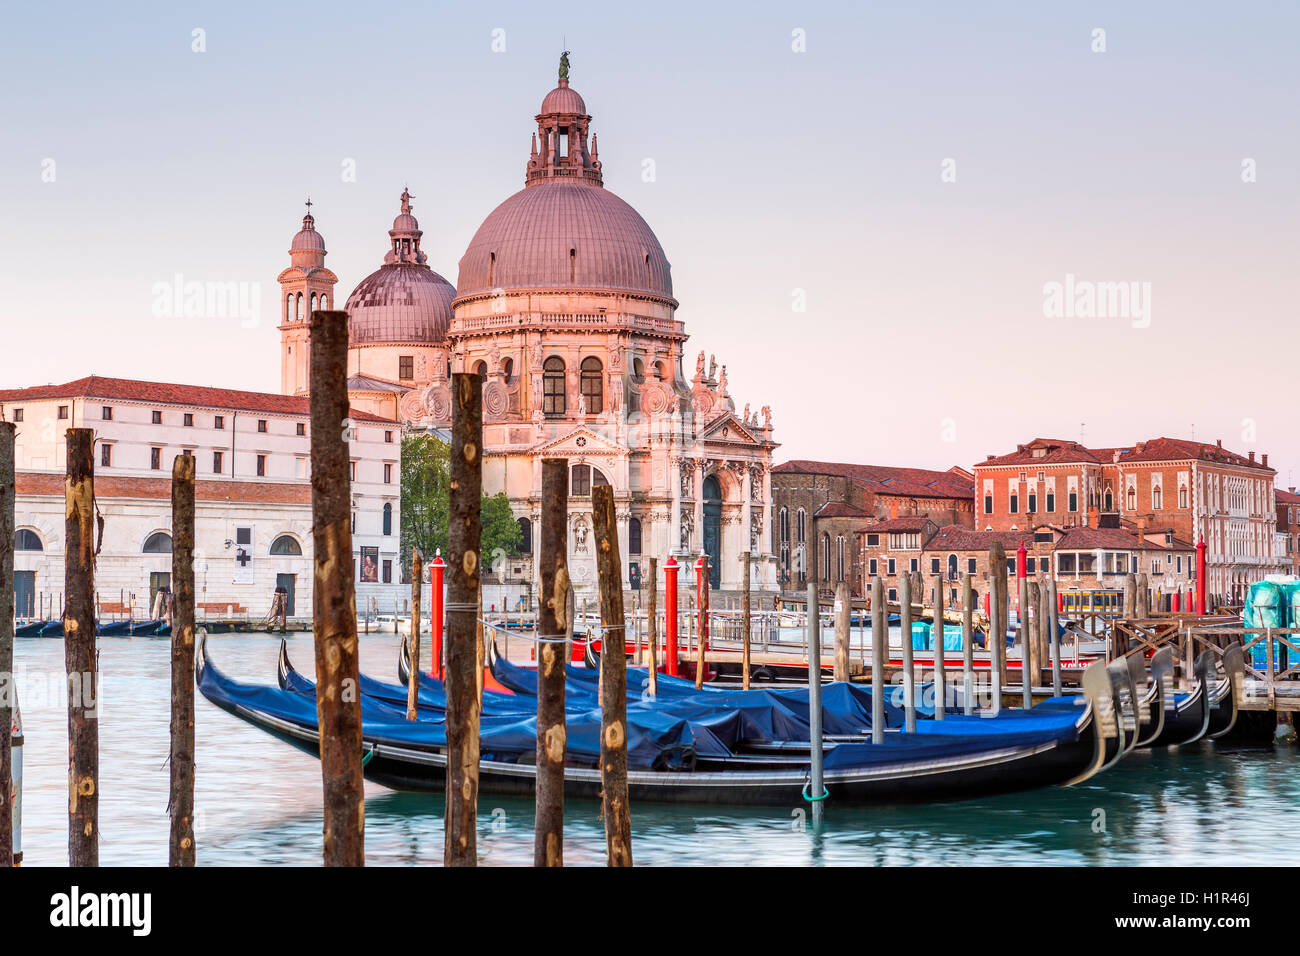 Basilica di Santa Maria della Salute, Grand Canal at Venice, Veneto, Italy, Europe. Stock Photo